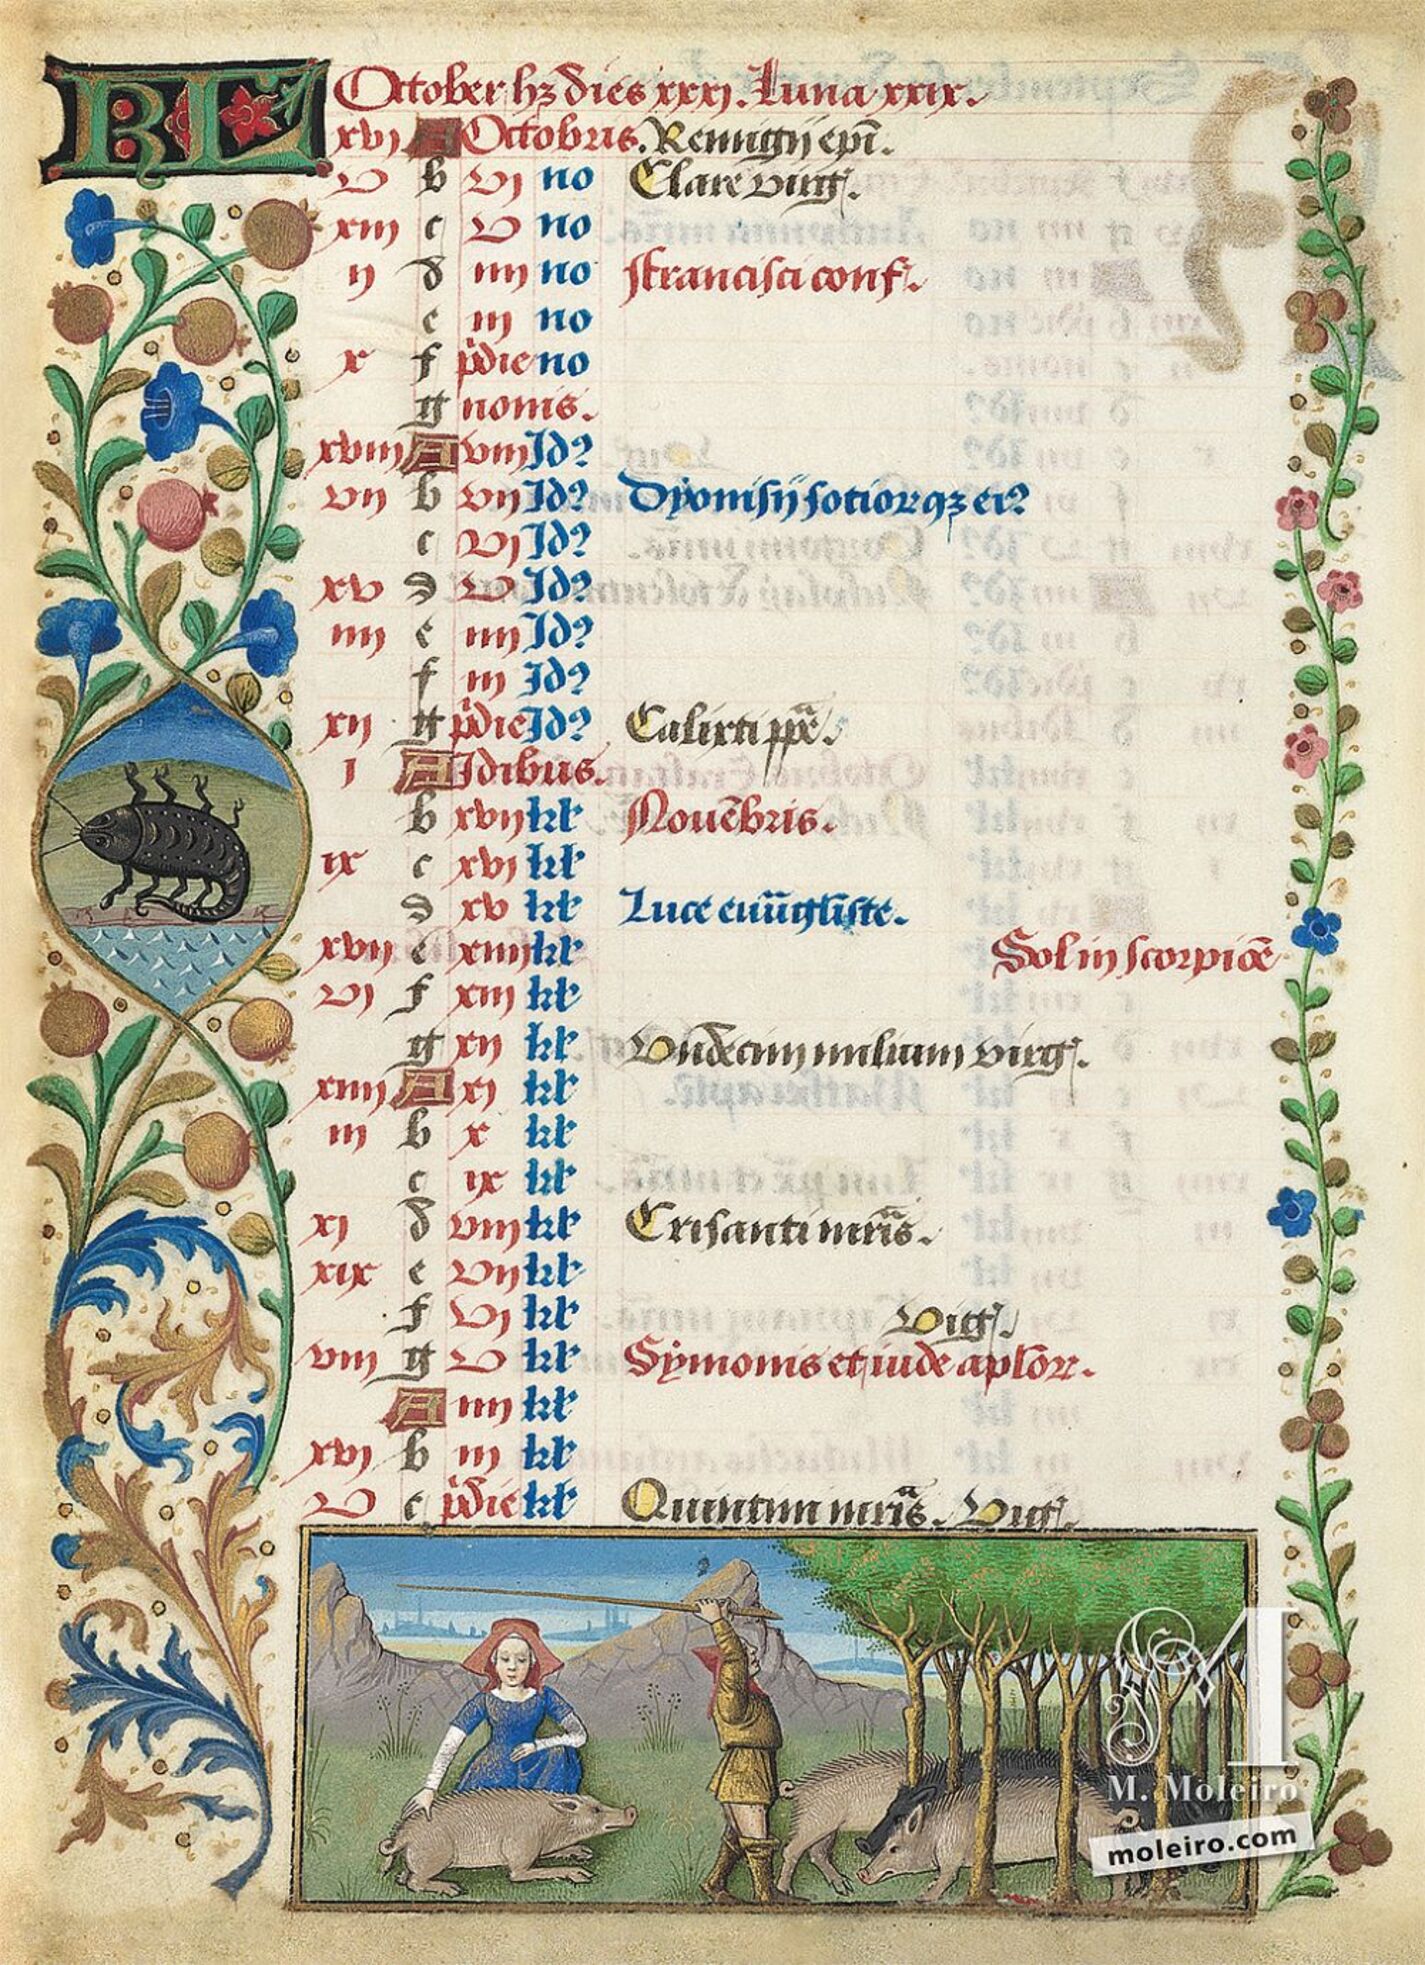 Calendario: octubre, Cerdos en montanera (f. 5v)